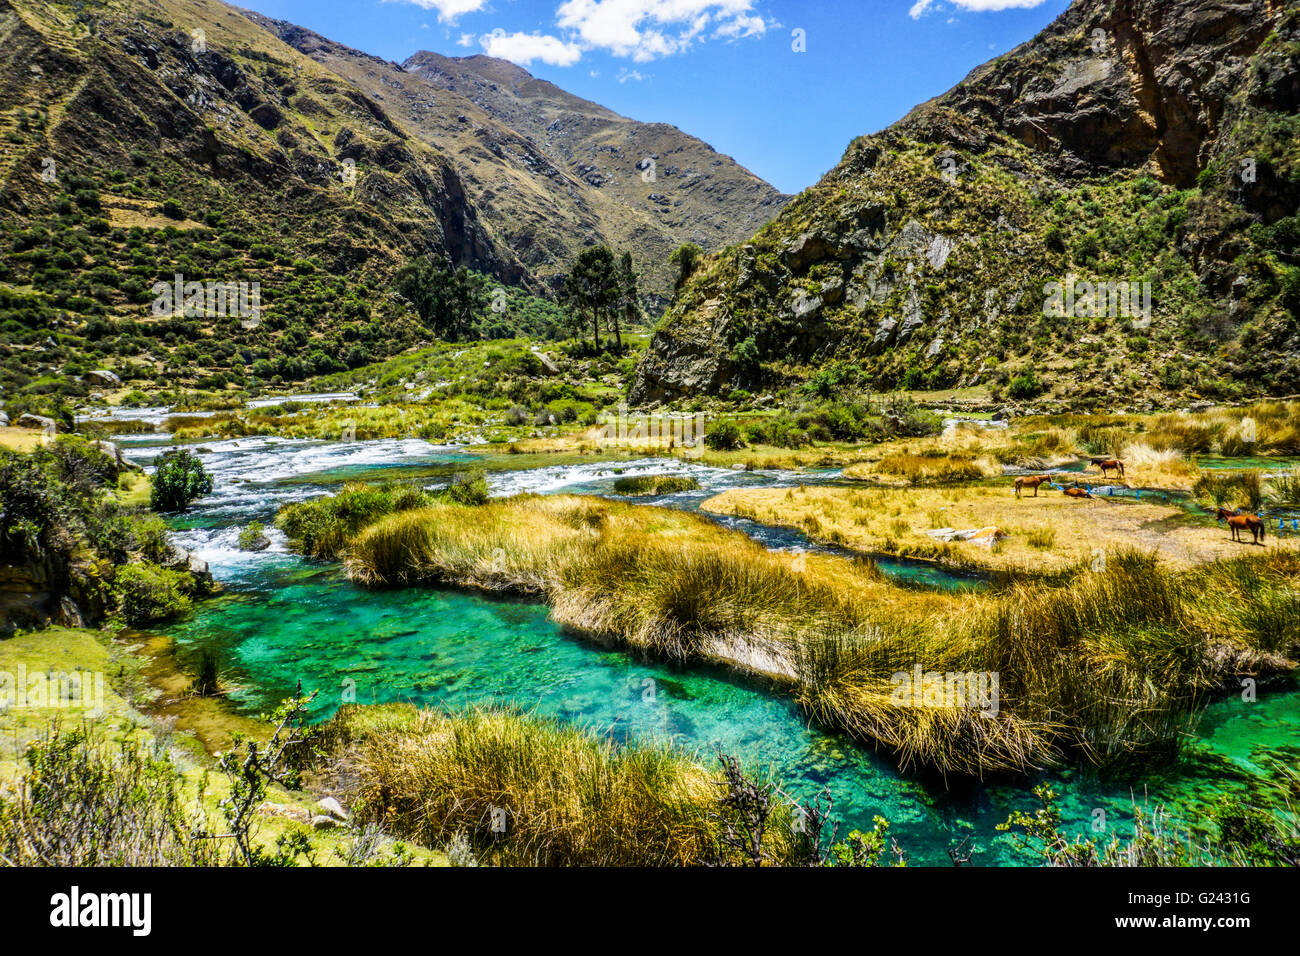 Wasserlandschaft in den peruanischen Anden. Fotografiert in der Nähe von Huancayo, Peru Stockfoto